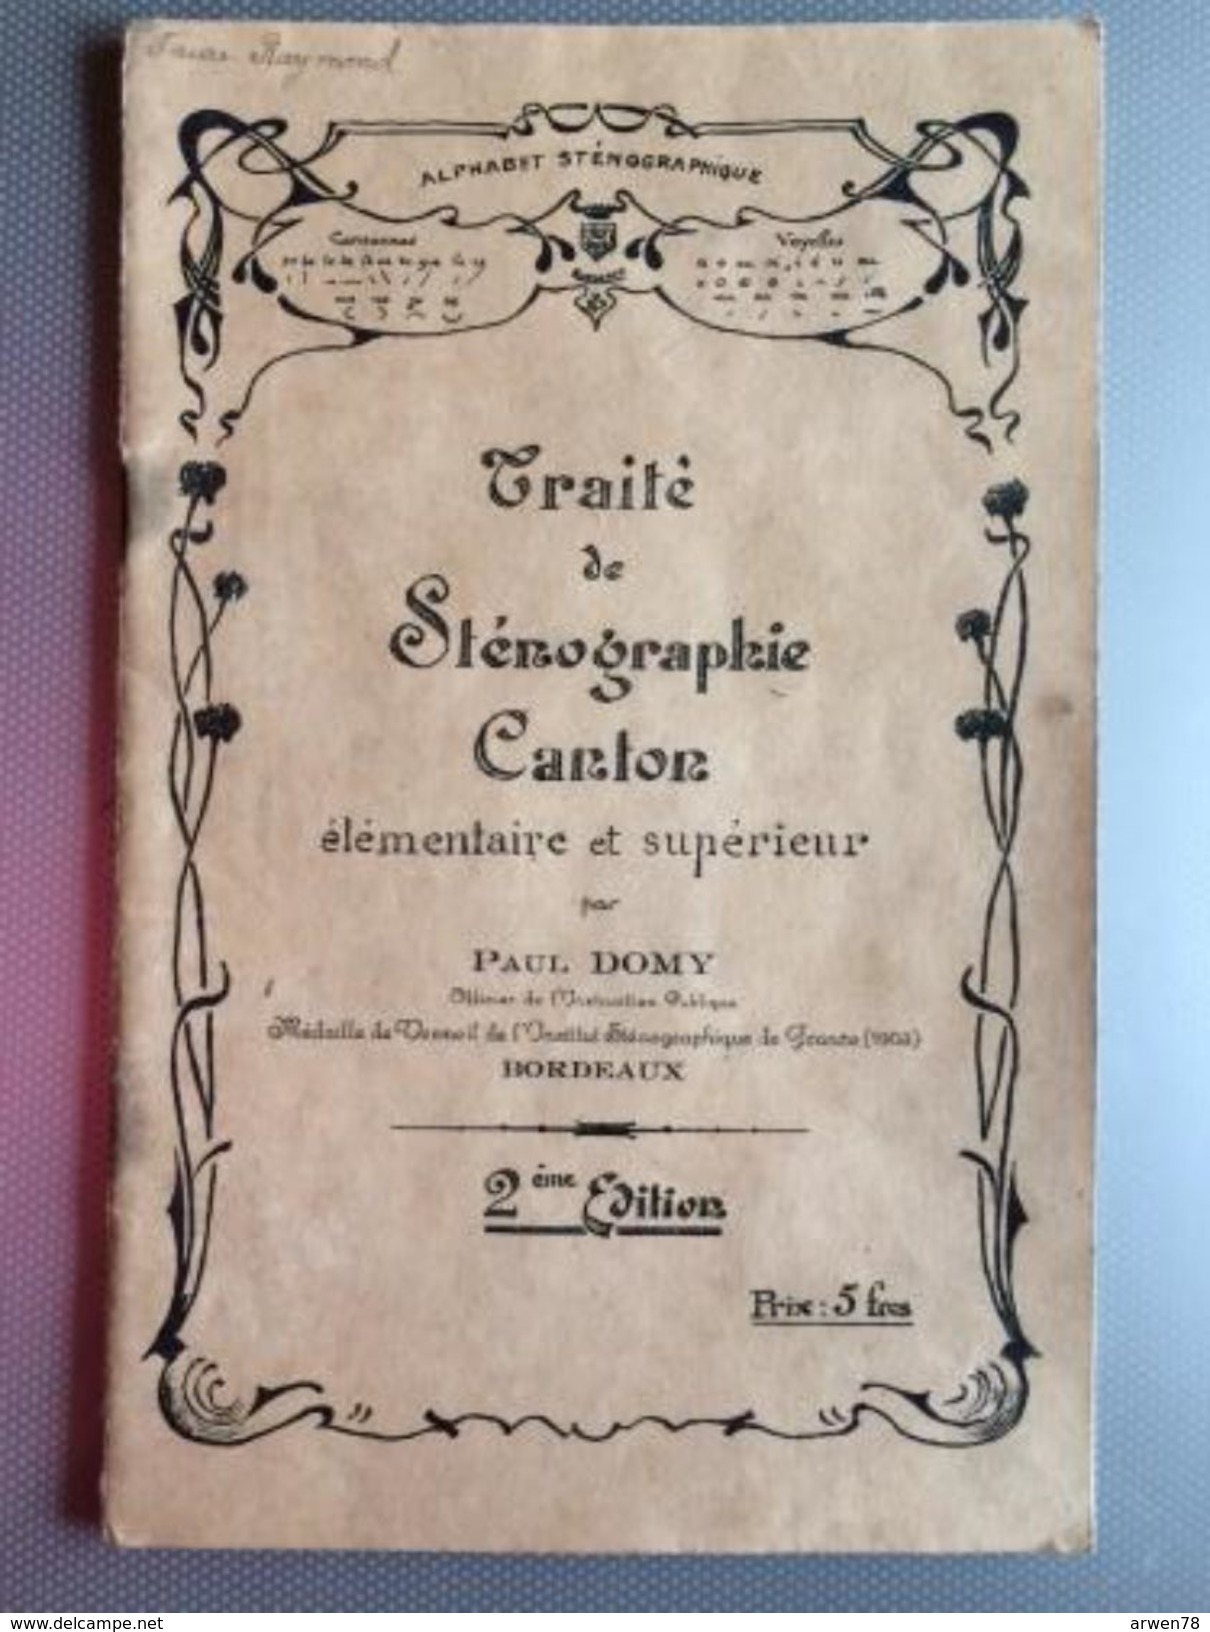 Traite De Stenographie Canton Par Paul Domy - 18 Ans Et Plus